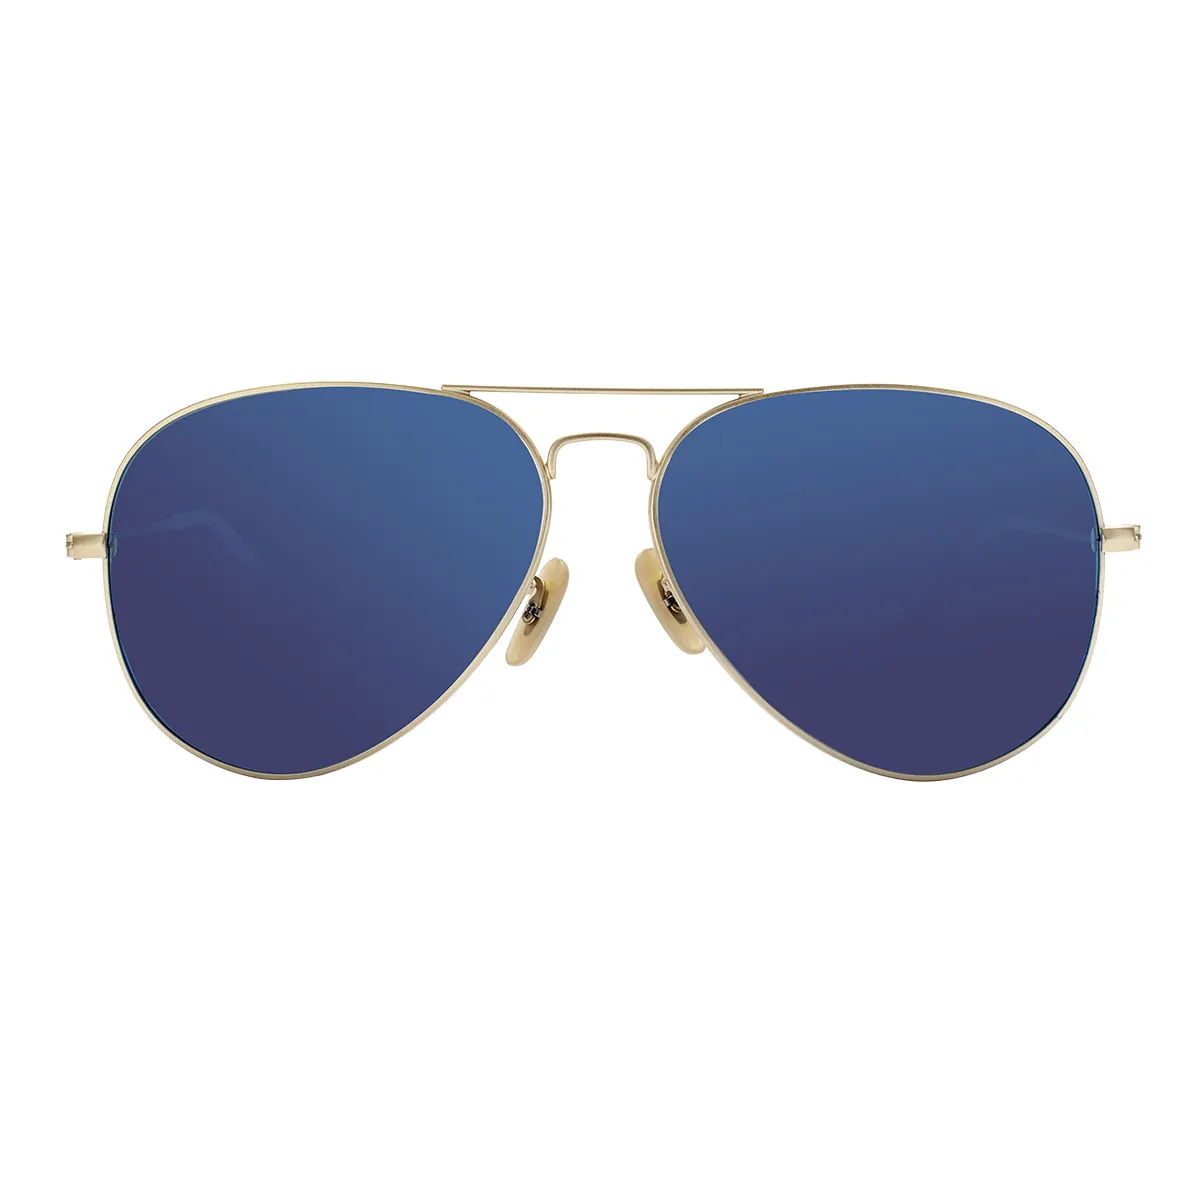 Vintage Aviator Gold  Sunglasses for Women & Men